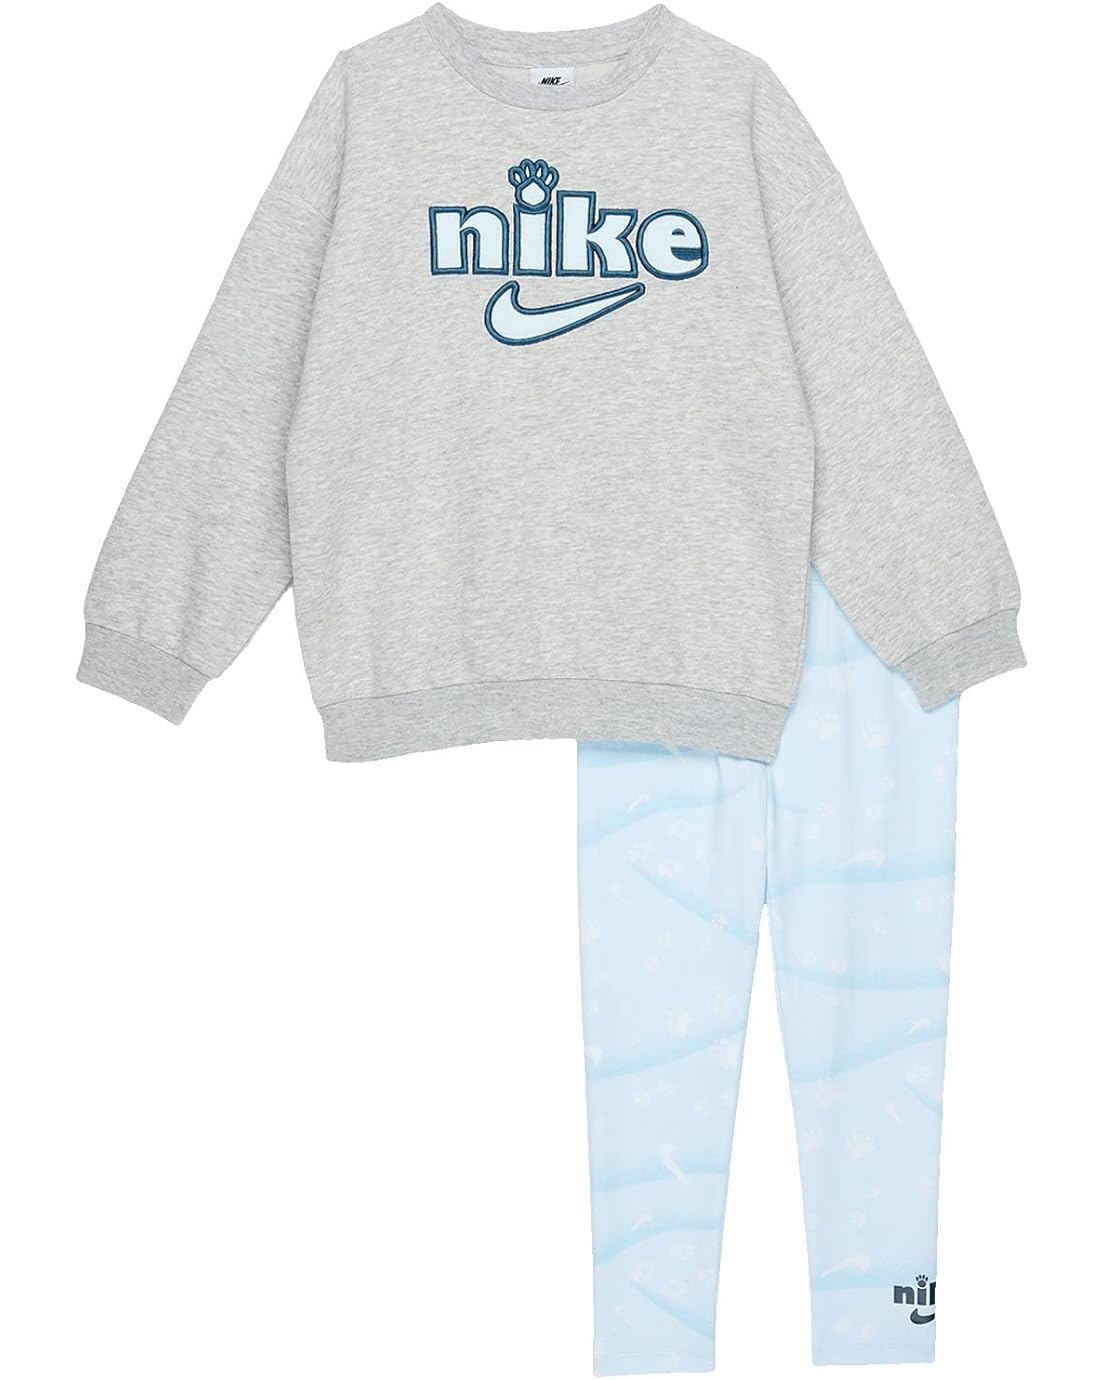 Nike Kids Ksa All Over Print Leggings Crew Set (Toddler)